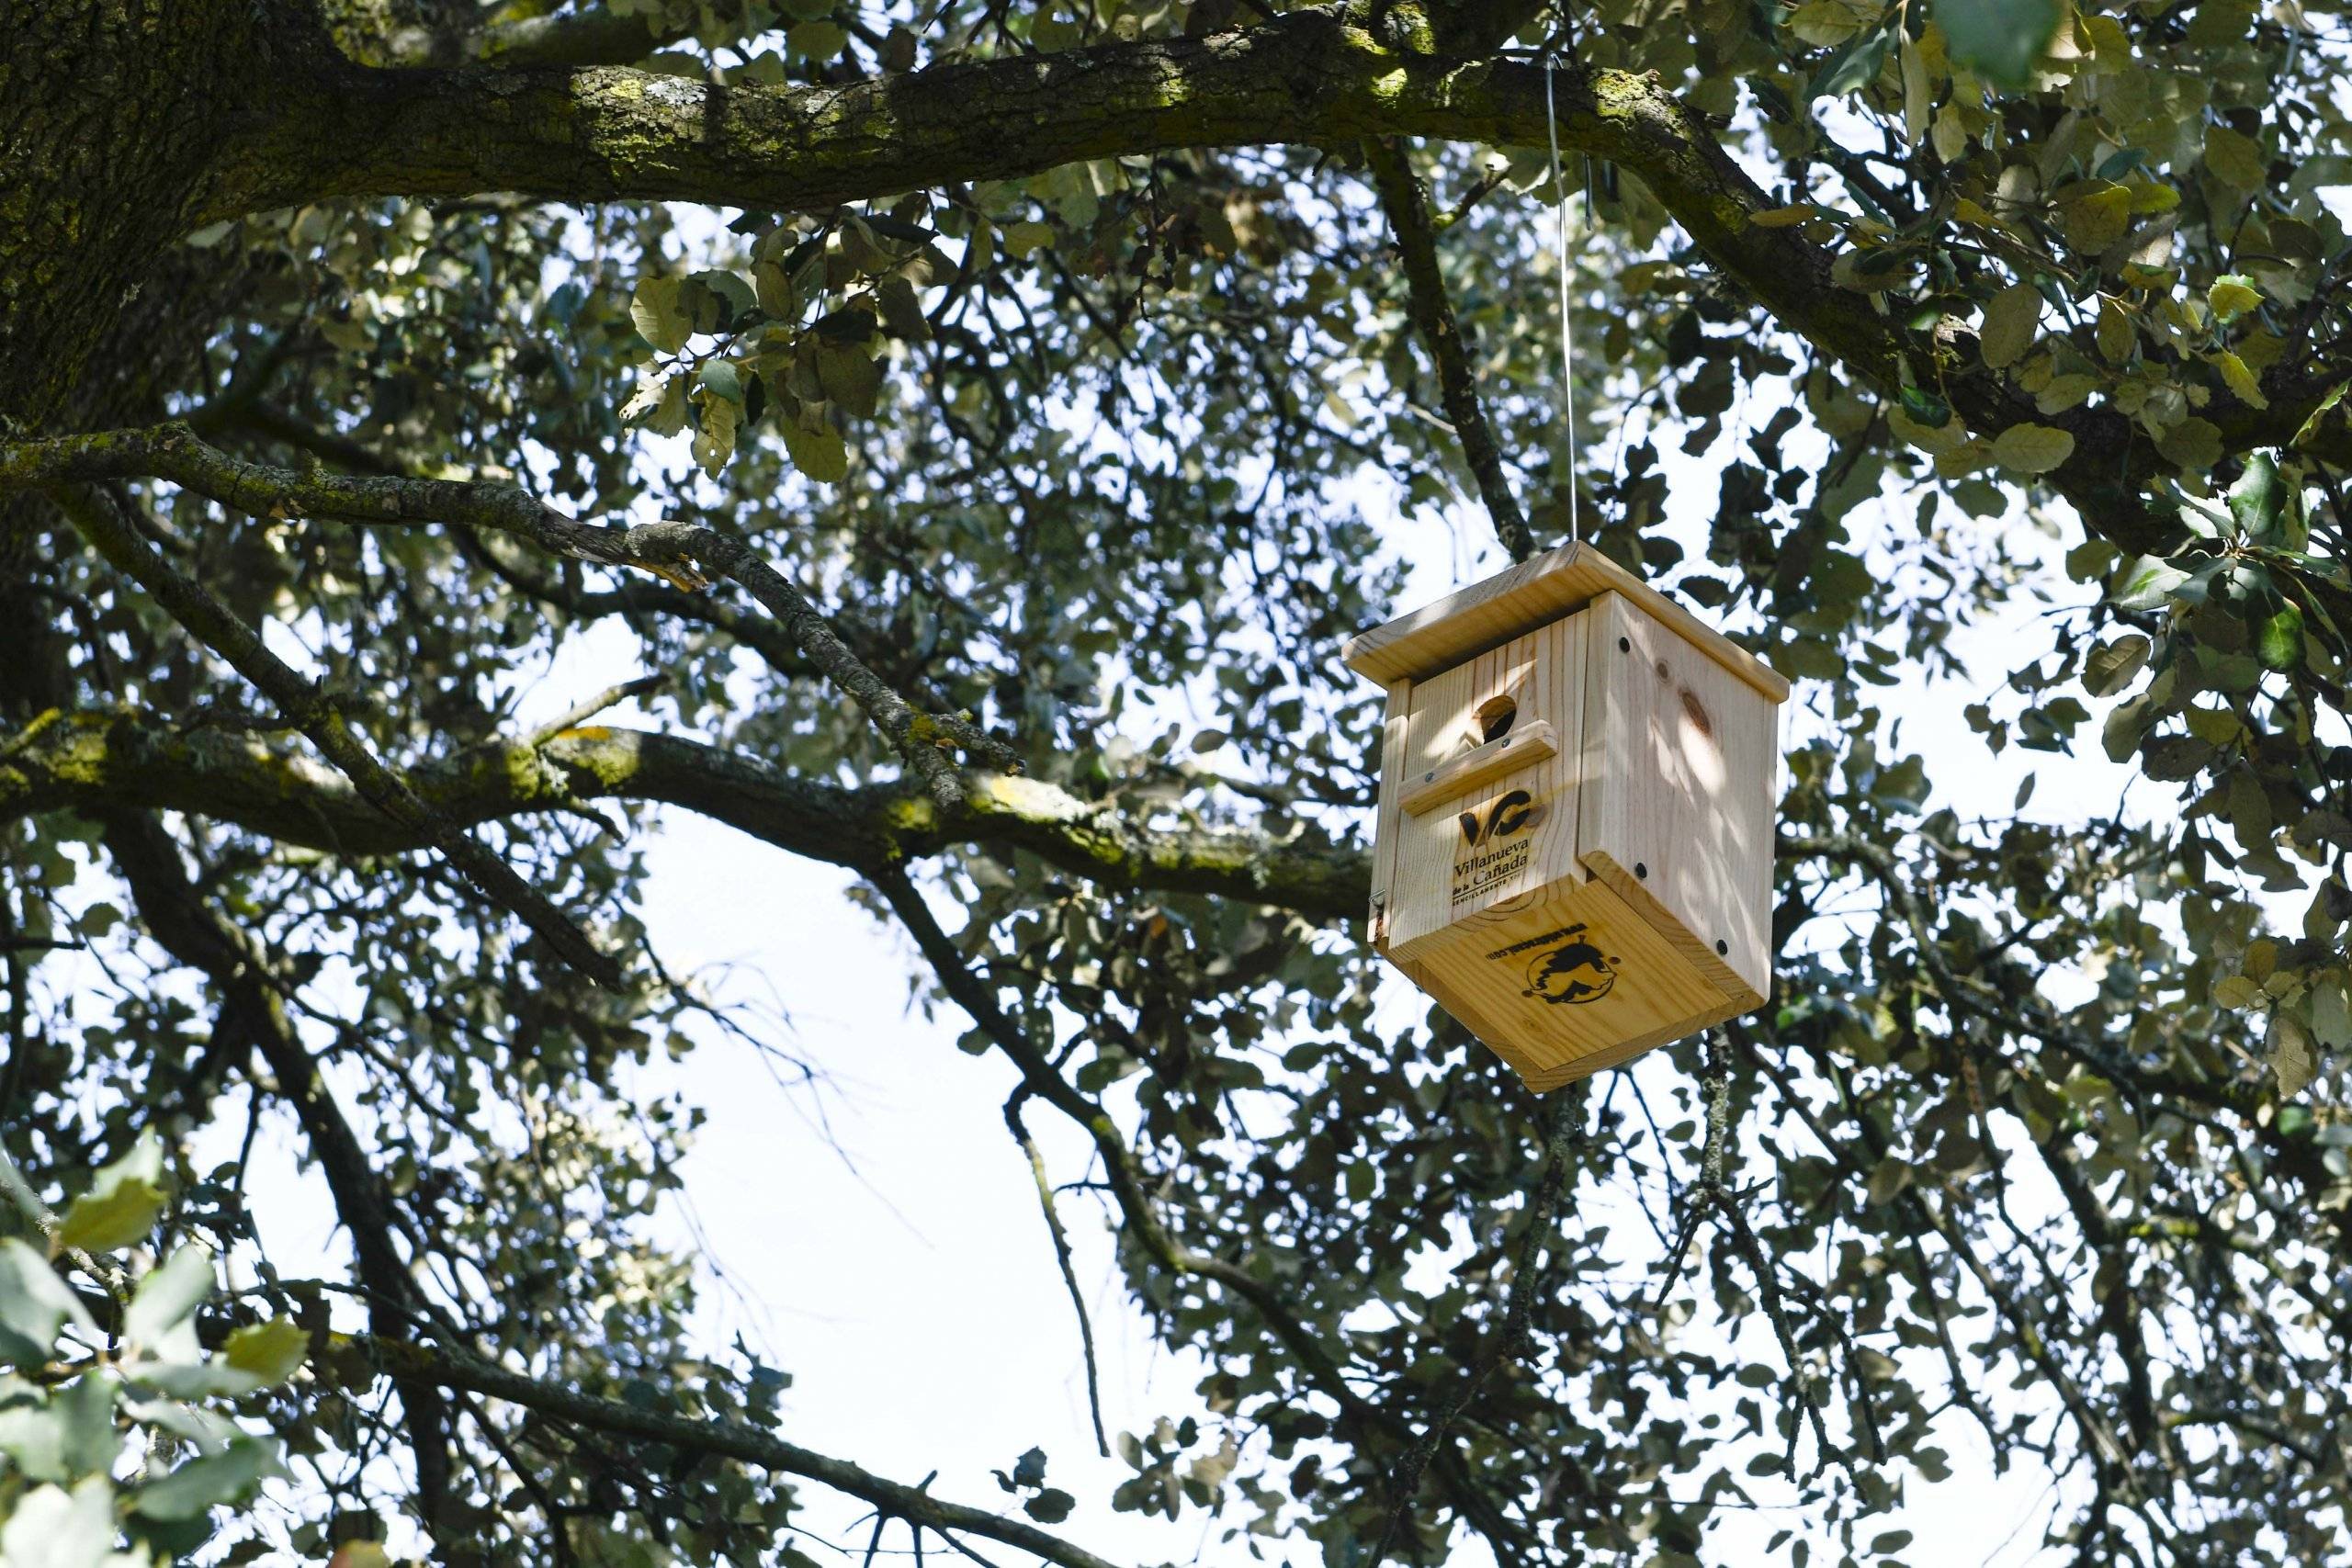 Imagen de una caja nido colgada en un árbol.